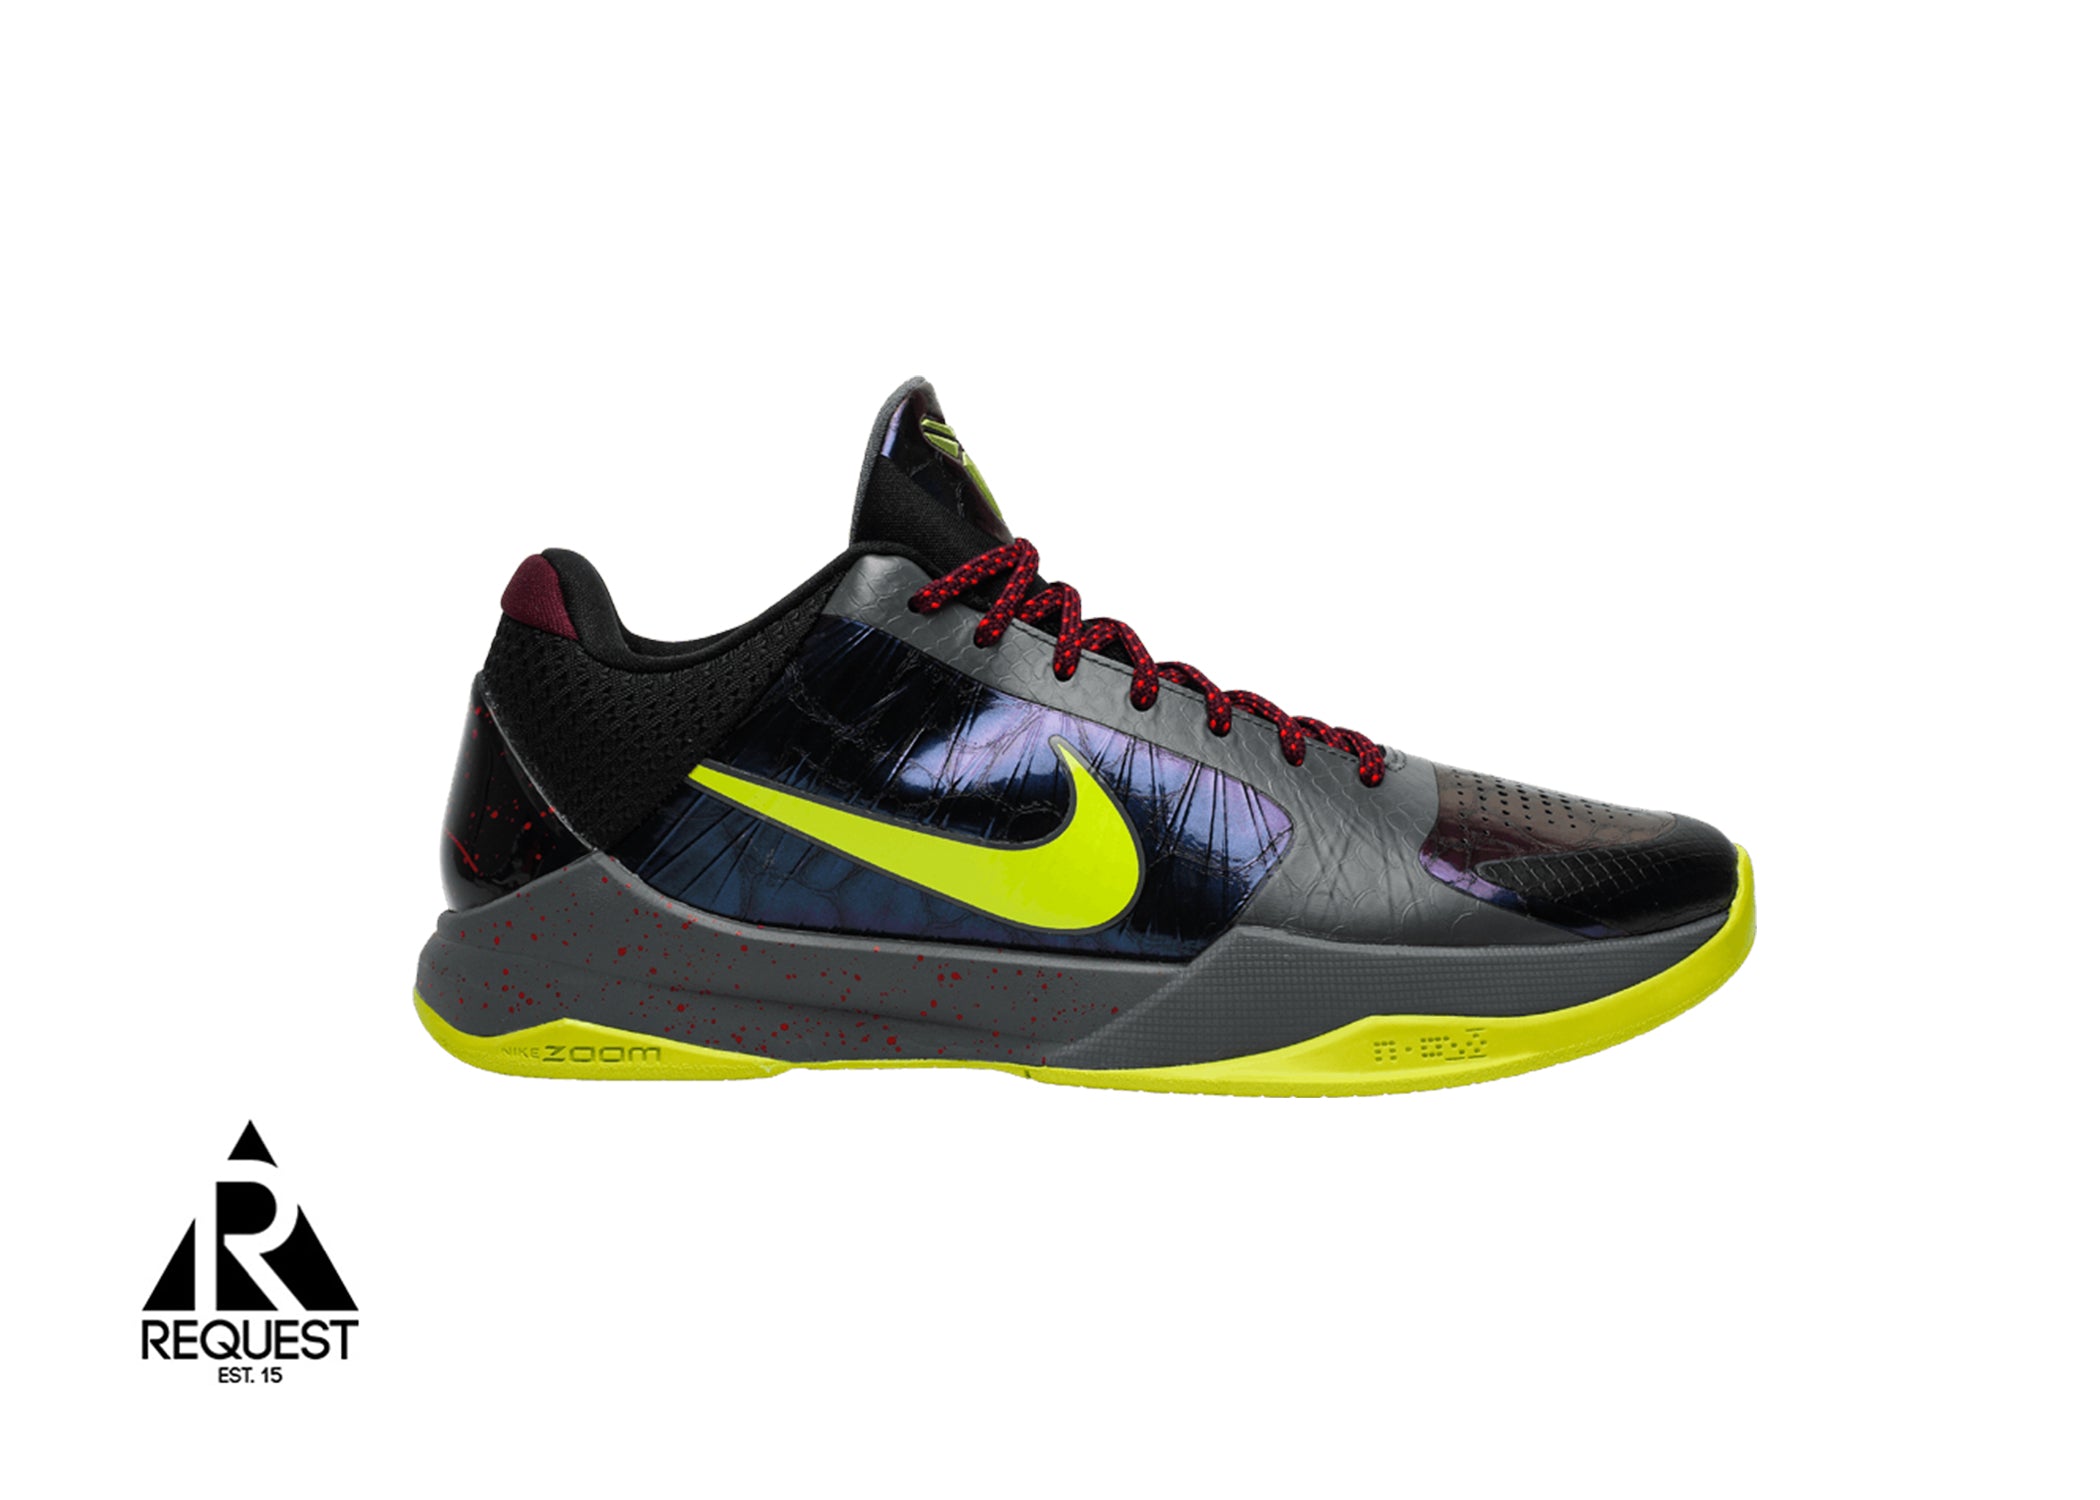 Nike Kobe V “Protro 2K Player Exclusive”